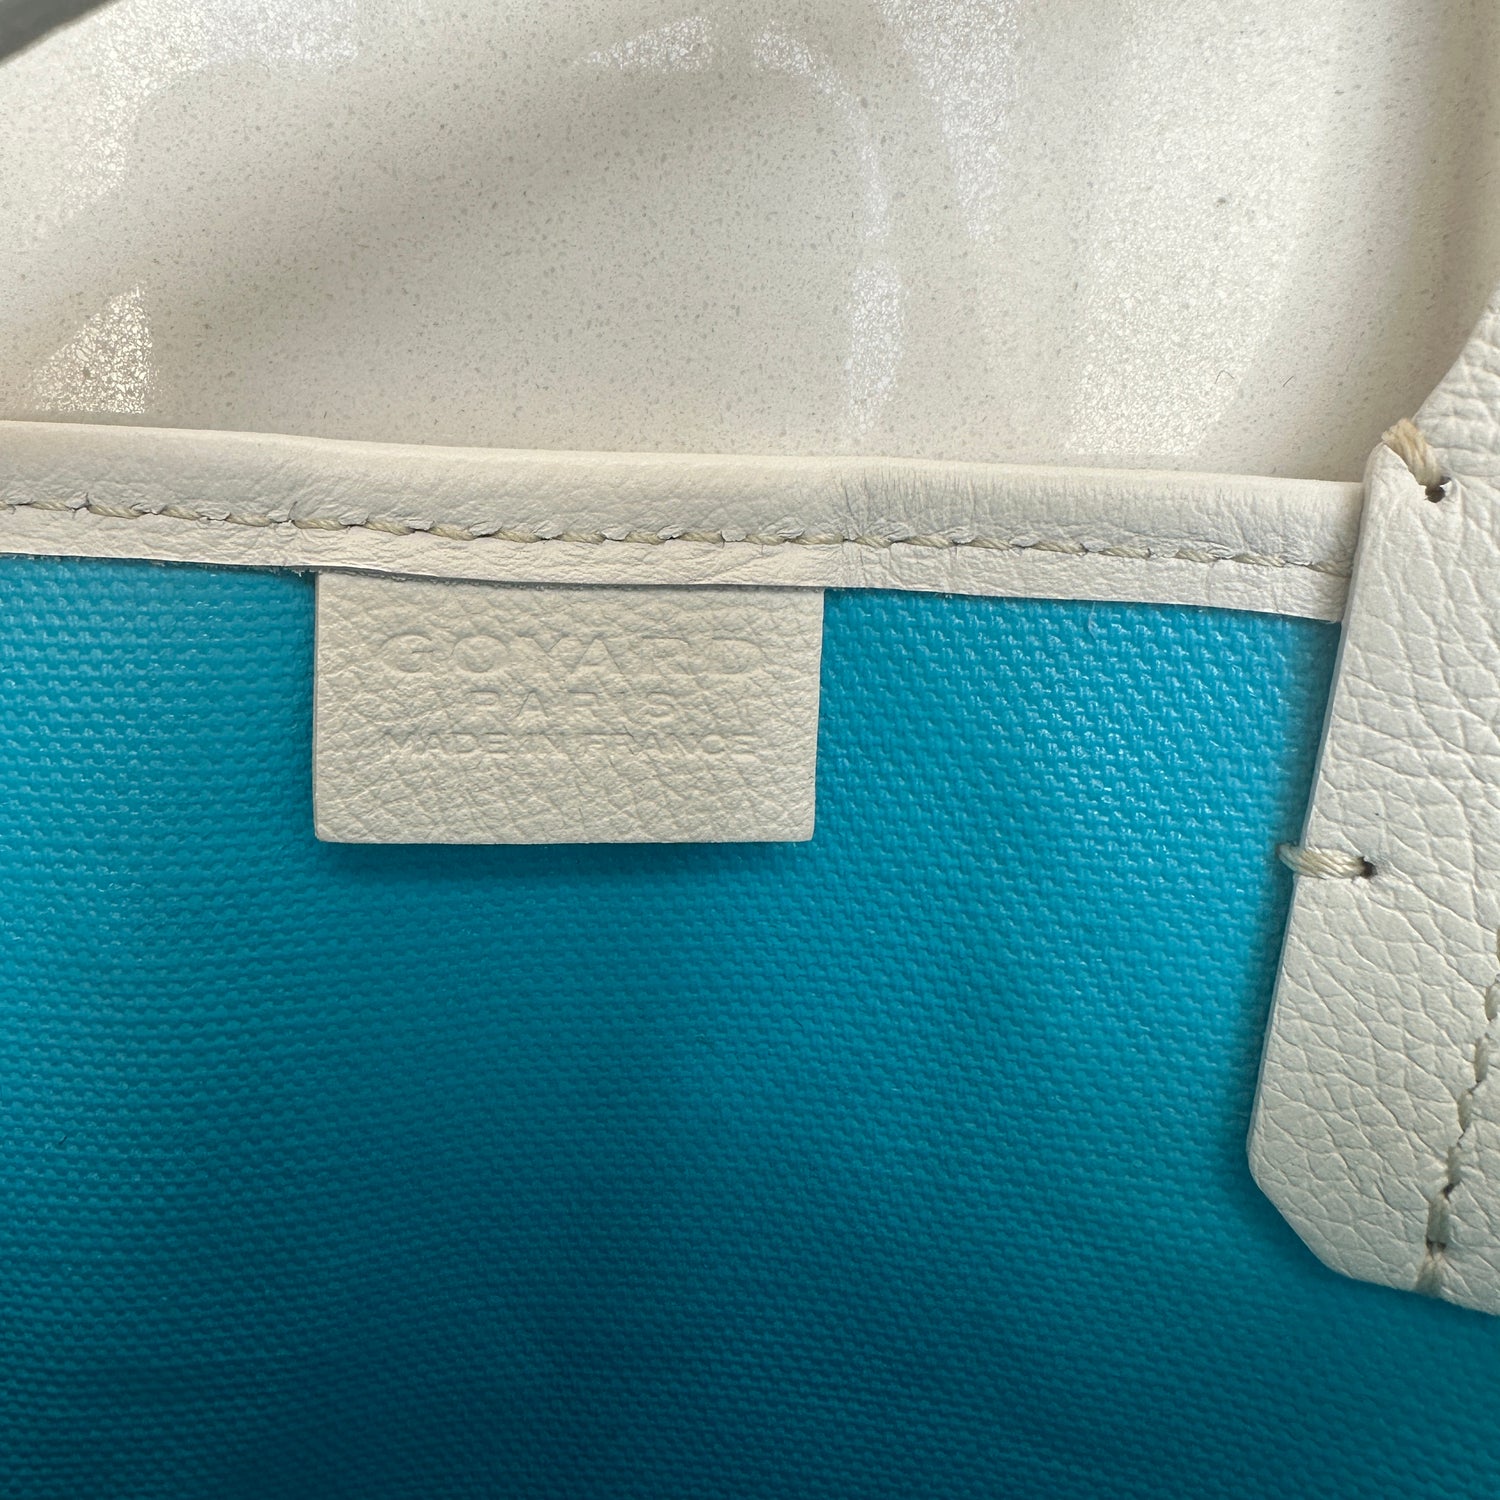 Goyard Goyardine Poitiers Claire Voie Bag w/Tags - Neutrals Mini Bags,  Handbags - GOY38027